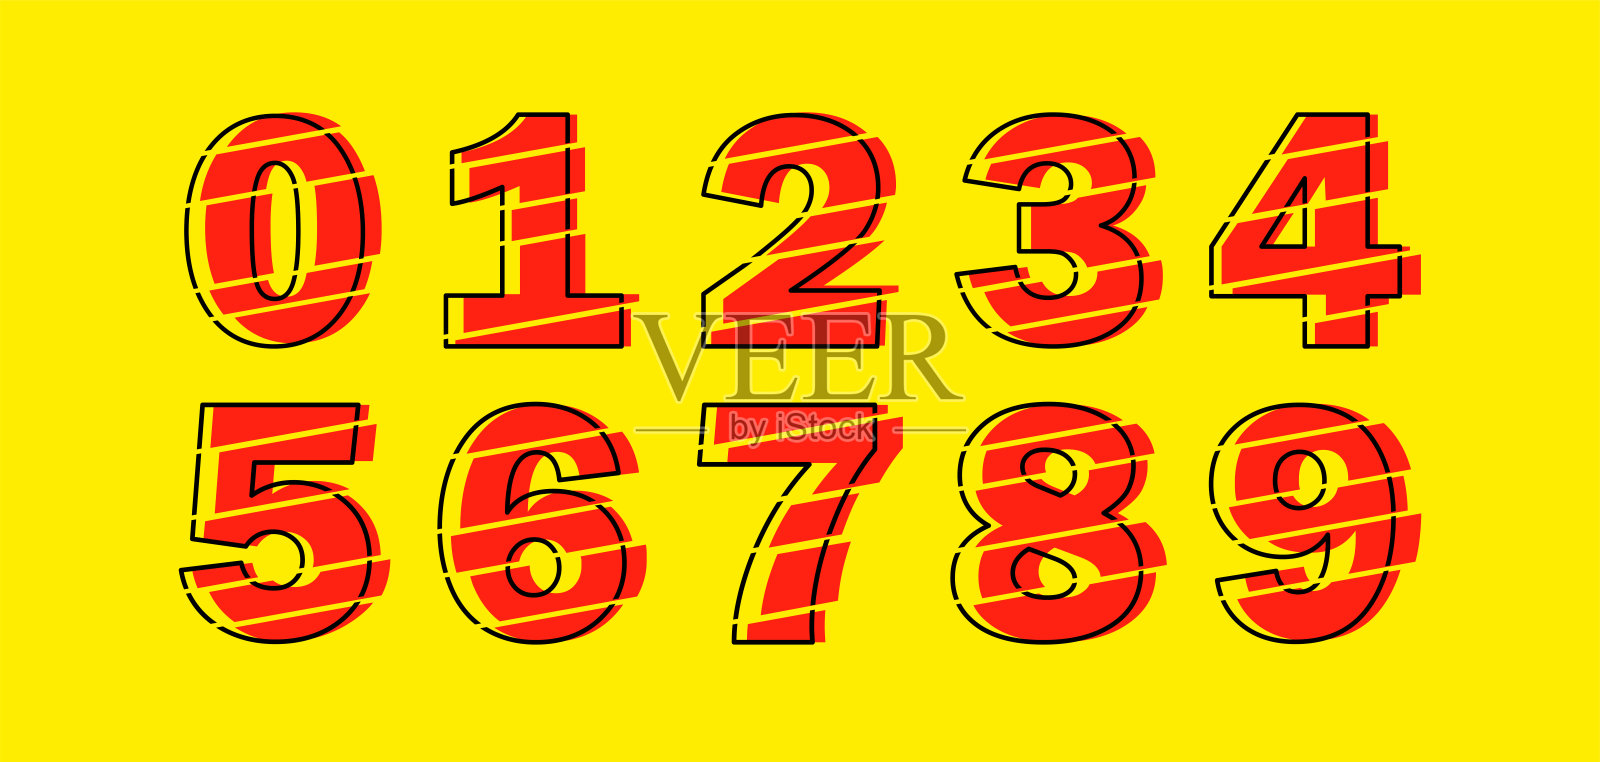 一组从0到9的十个数字。Glitch现代红色矢量数设计元素。插画图片素材